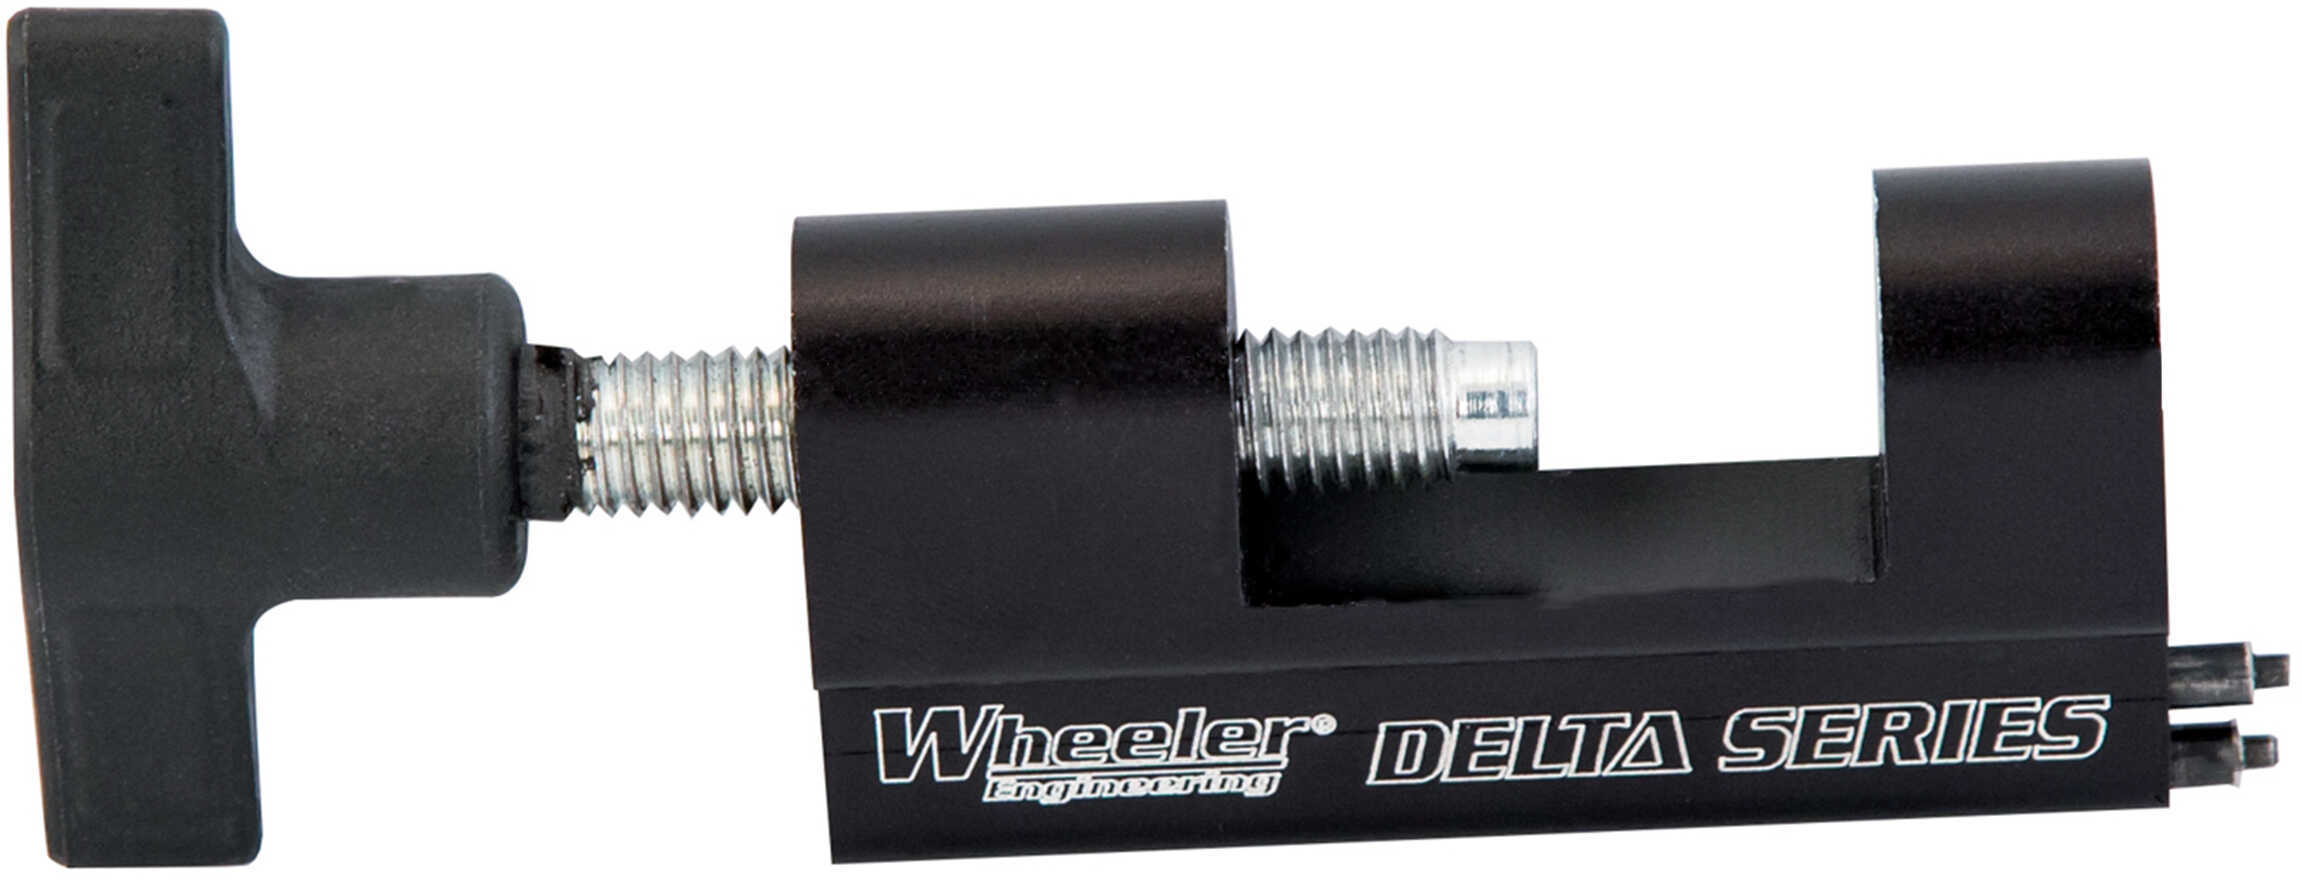 Wheeler Delta Series AR Trgger Guard Install Tool Md: 710907